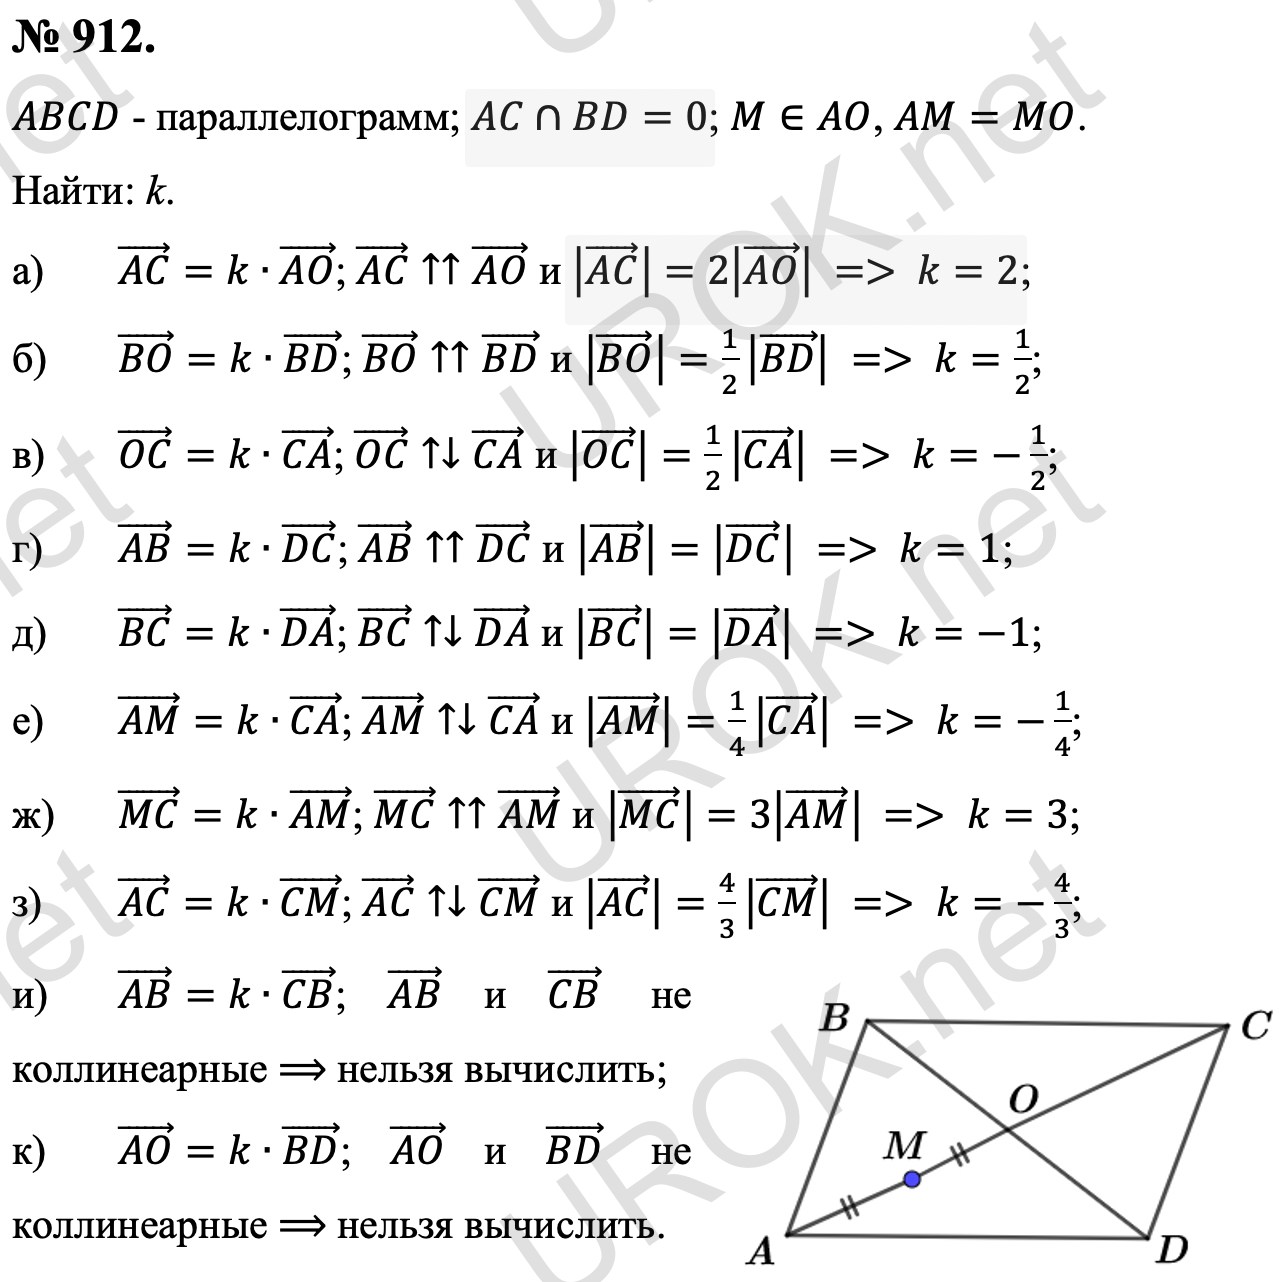 Ответ с подробным решением задания Геометрия 9 класс Атанасян: 912. Дано: ABCD - параллелограмм. AC∩BD=0. M∈AO, AM=MO. Найти: k. (AC) ⃗=k∙(AO) ⃗. (AC) ⃗↑↑(AO) ⃗ и |(AC) ⃗ |=2|(AO) ⃗ |, то k=2. (BO) ⃗=k∙(BD) ⃗. (BO) ⃗↑↑(BD) ⃗ и |(BO) ⃗ |=1/2 |(BD) ⃗ |, то k=1/2. (OC) ⃗=k∙(CA) ⃗. (OC) ⃗↑↓(CA) ⃗ и |(OC) ⃗ |=1/2 |(CA) ⃗ |, то k=-1/2. (AB) ⃗=k∙(DC) ⃗. (AB) ⃗↑↑(DC) ⃗ и |(AB) ⃗ |=|(DC) ⃗ |, то k=1. (BC) ⃗=k∙(DA) ⃗. (BC) ⃗↑↓(DA) ⃗ и |(BC) ⃗ |=|(DA) ⃗ |, то k=-1. (AM) ⃗=k∙(CA) ⃗. (AM) ⃗↑↓(CA) ⃗ и |(AM) ⃗ |=1/4 |(CA) ⃗ |, то k=-1/4. (MC) ⃗=k∙(AM) ⃗. (MC) ⃗↑↑(AM) ⃗ и |(MC) ⃗ |=3|(AM) ⃗ |, то k=3. (AC) ⃗=k∙(CM) ⃗. (AC) ⃗↑↓(CM) ⃗ и |(AC) ⃗ |=4/3 |(CM) ⃗ |, то k=-4/3. (AB) ⃗=k∙(CB) ⃗. (AB) ⃗ и (CB) ⃗ не коллинеарные ⟹ нельзя вычислить. (AO) ⃗=k∙(BD) ⃗. (AO) ⃗ и (BD) ⃗ не коллинеарные ⟹ нельзя вычислить. 